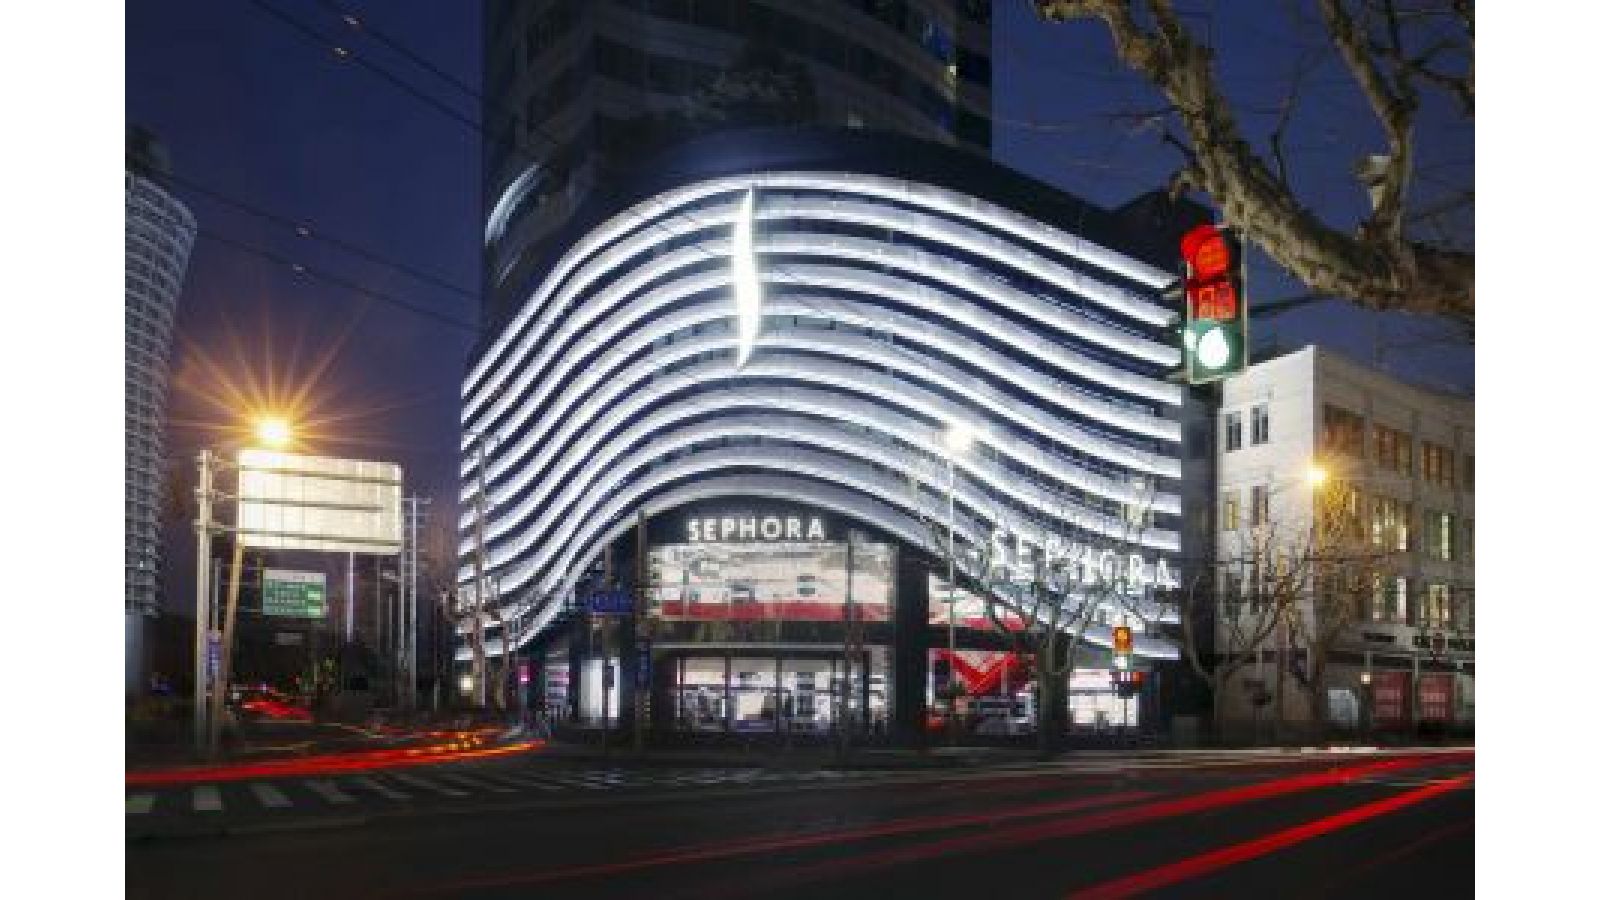 Sephora Shanghai Flagship Store